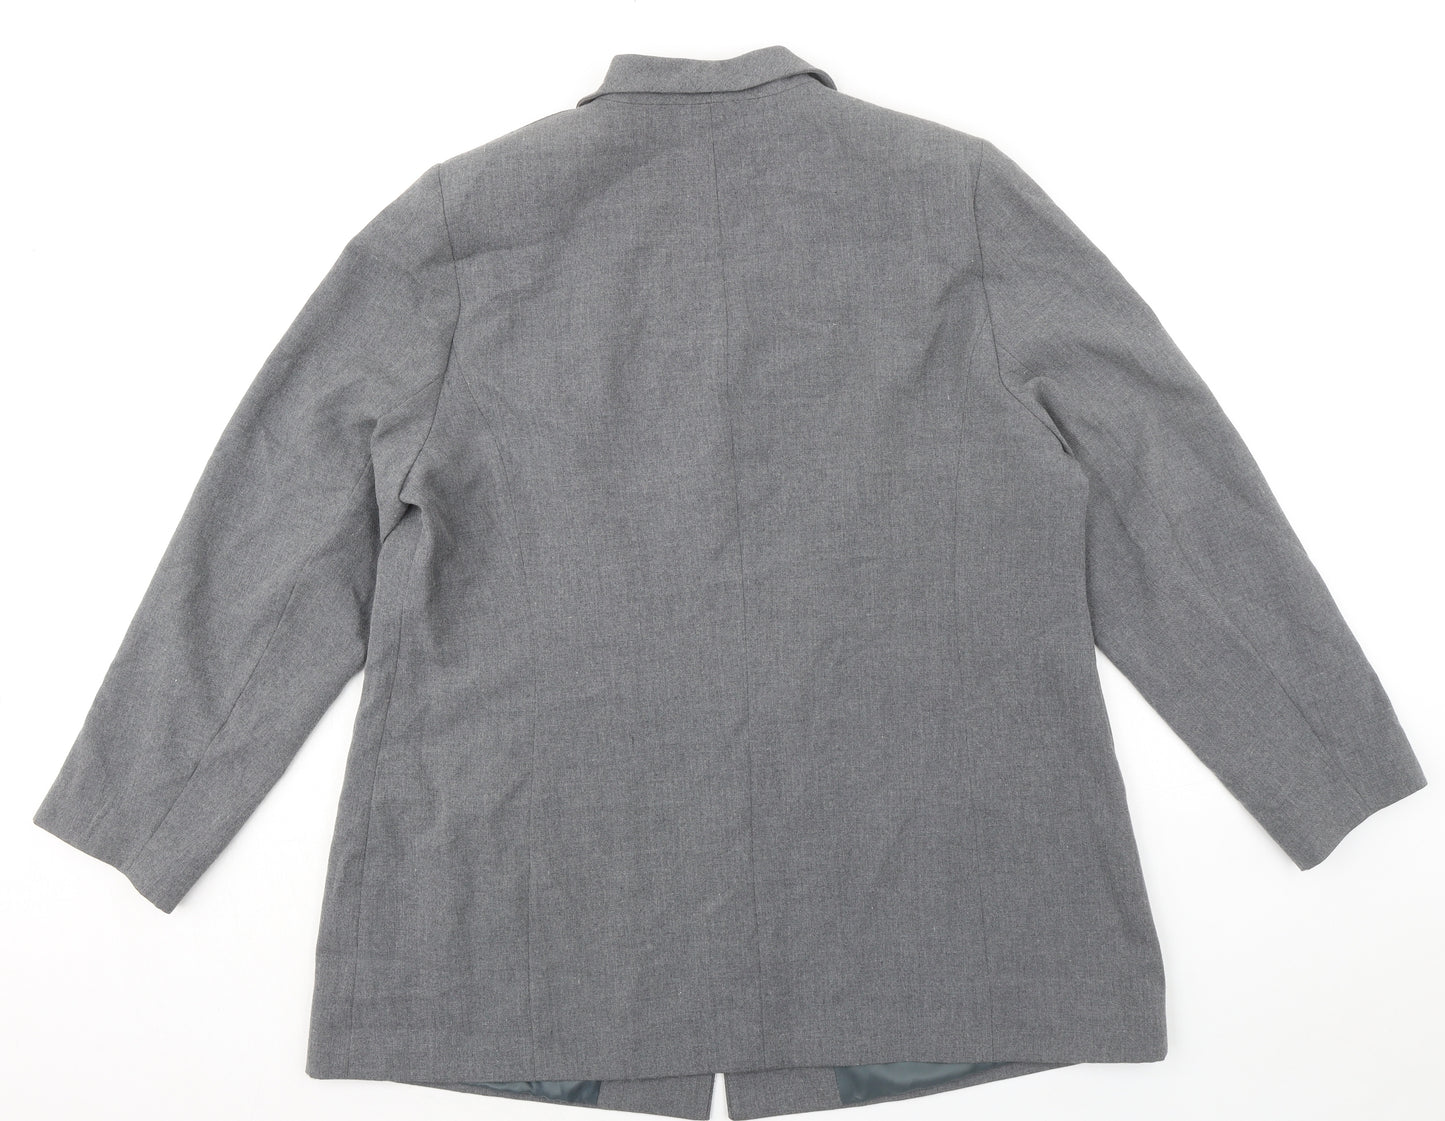 SlimTru Womens Grey Jacket Blazer Size 22 Button